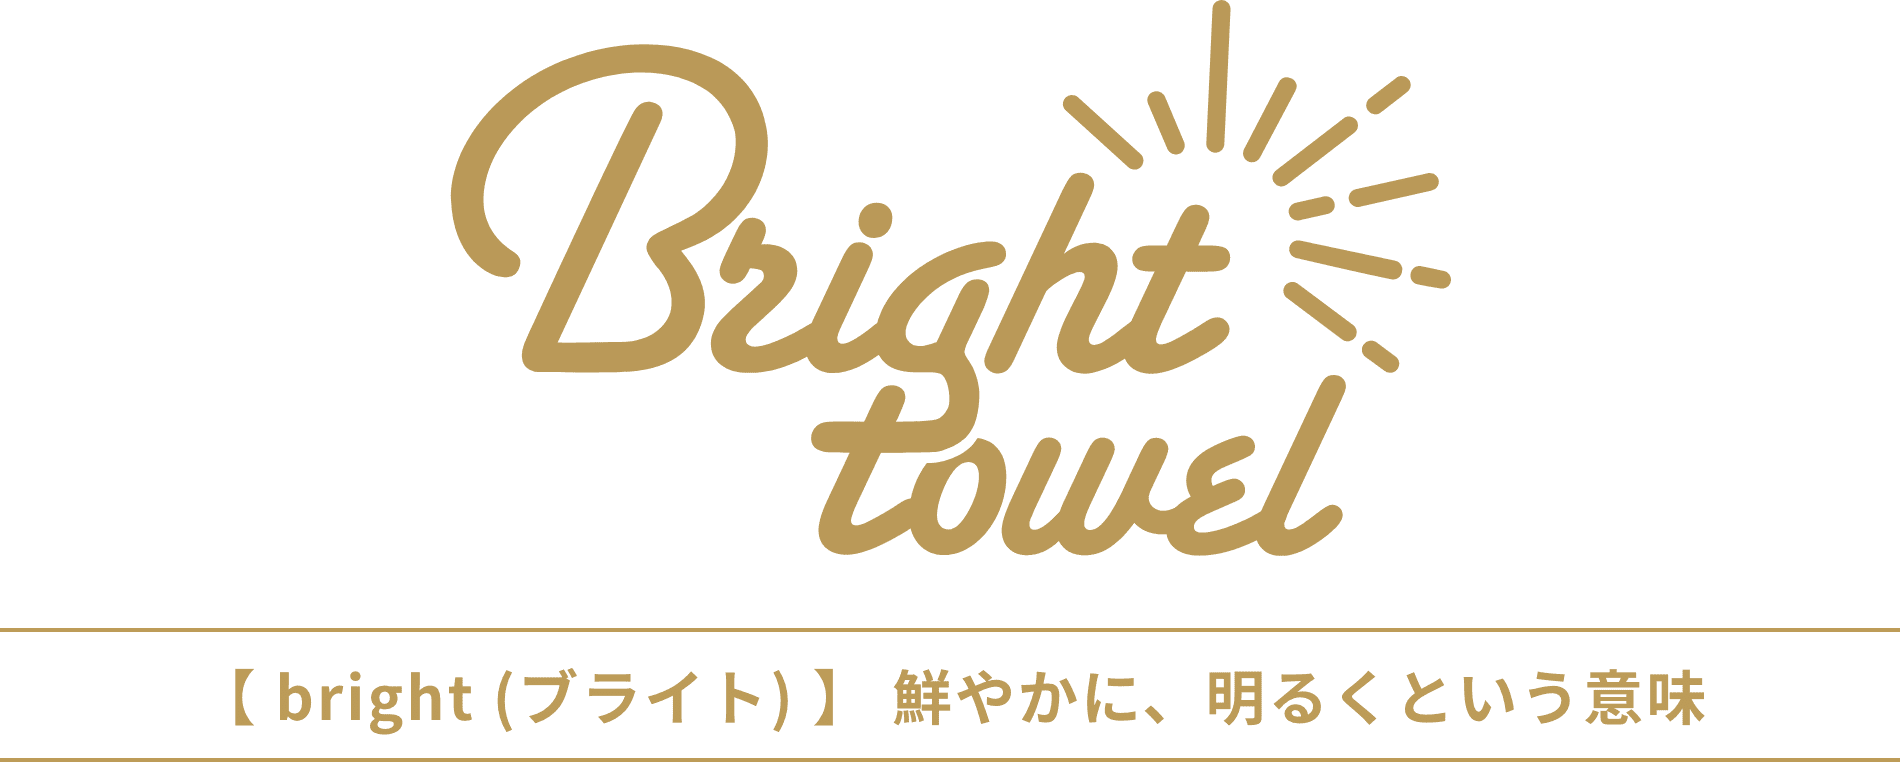 【bright (ブライト)】鮮やかに、明るくという意味を持つ、ウィングタオルの昇華転写用オリジナルタオル